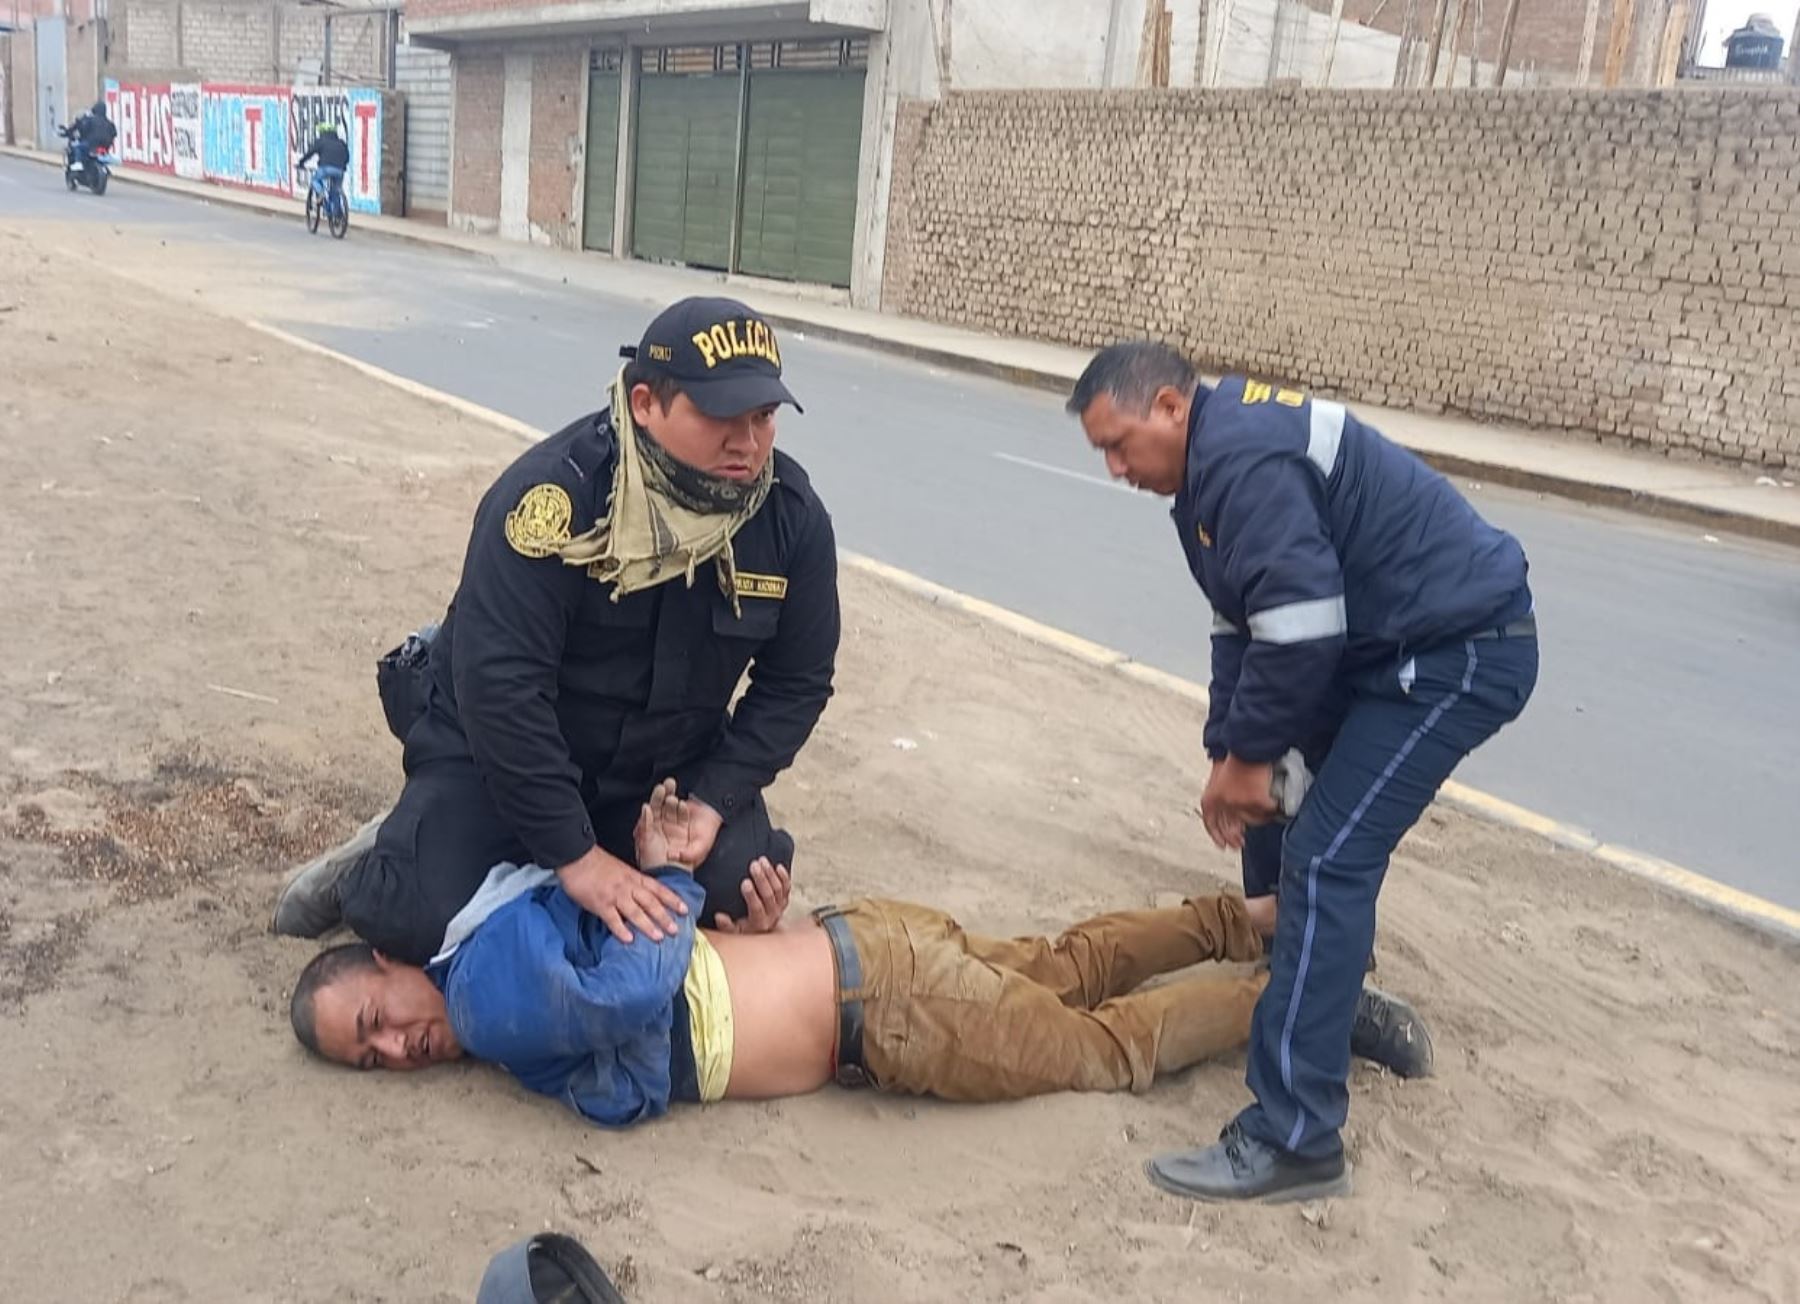 Gracias al patrullaje integrado la policía logró desarticular 3 bandas de delincuentes y detener a 71 personas en la provincia de Trujillo.